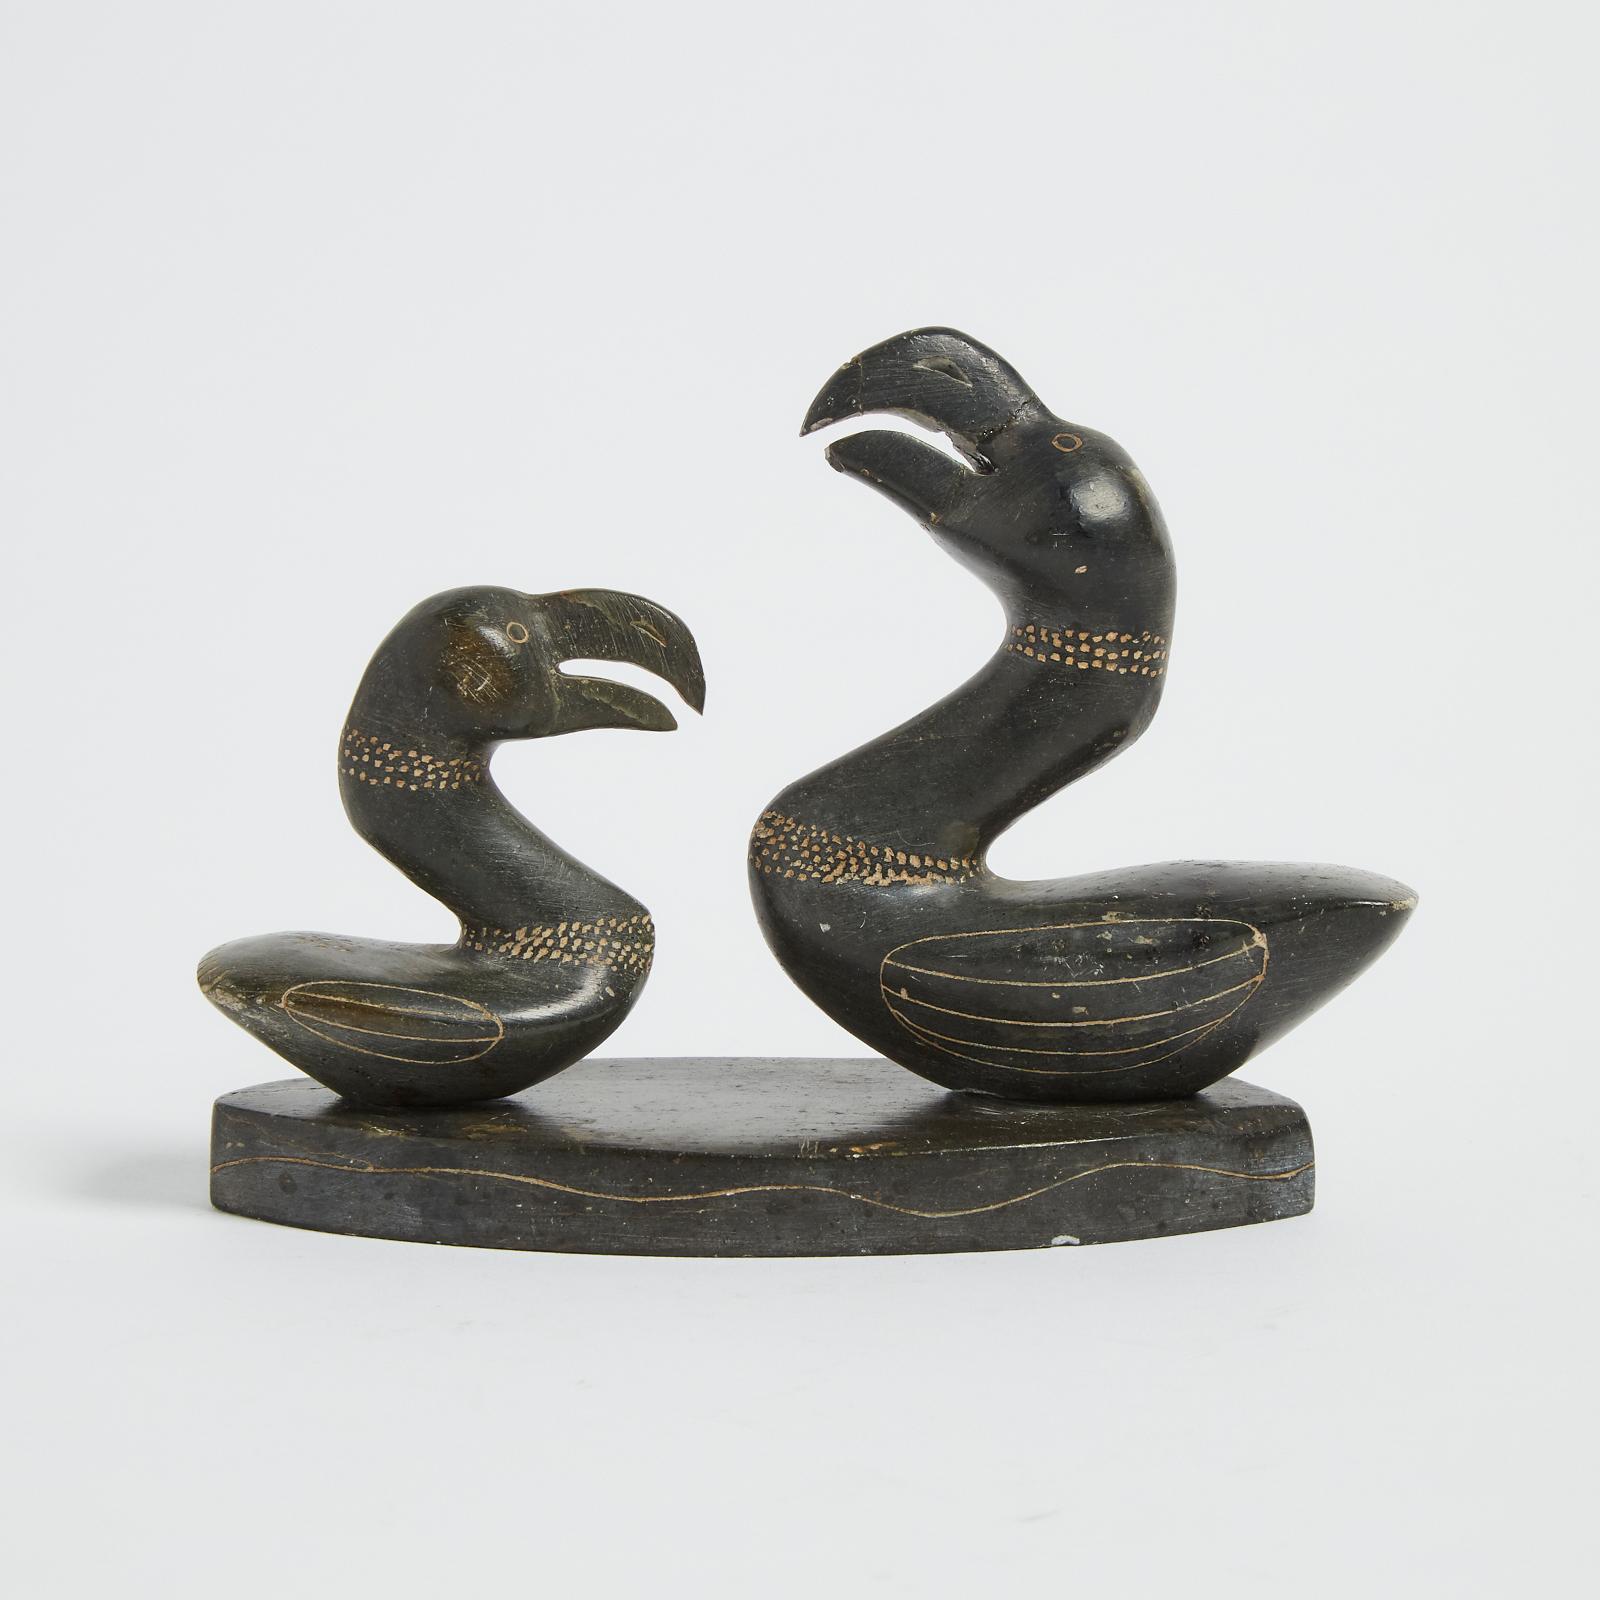 Lucassie Kumarluk (1921) - Two Birds